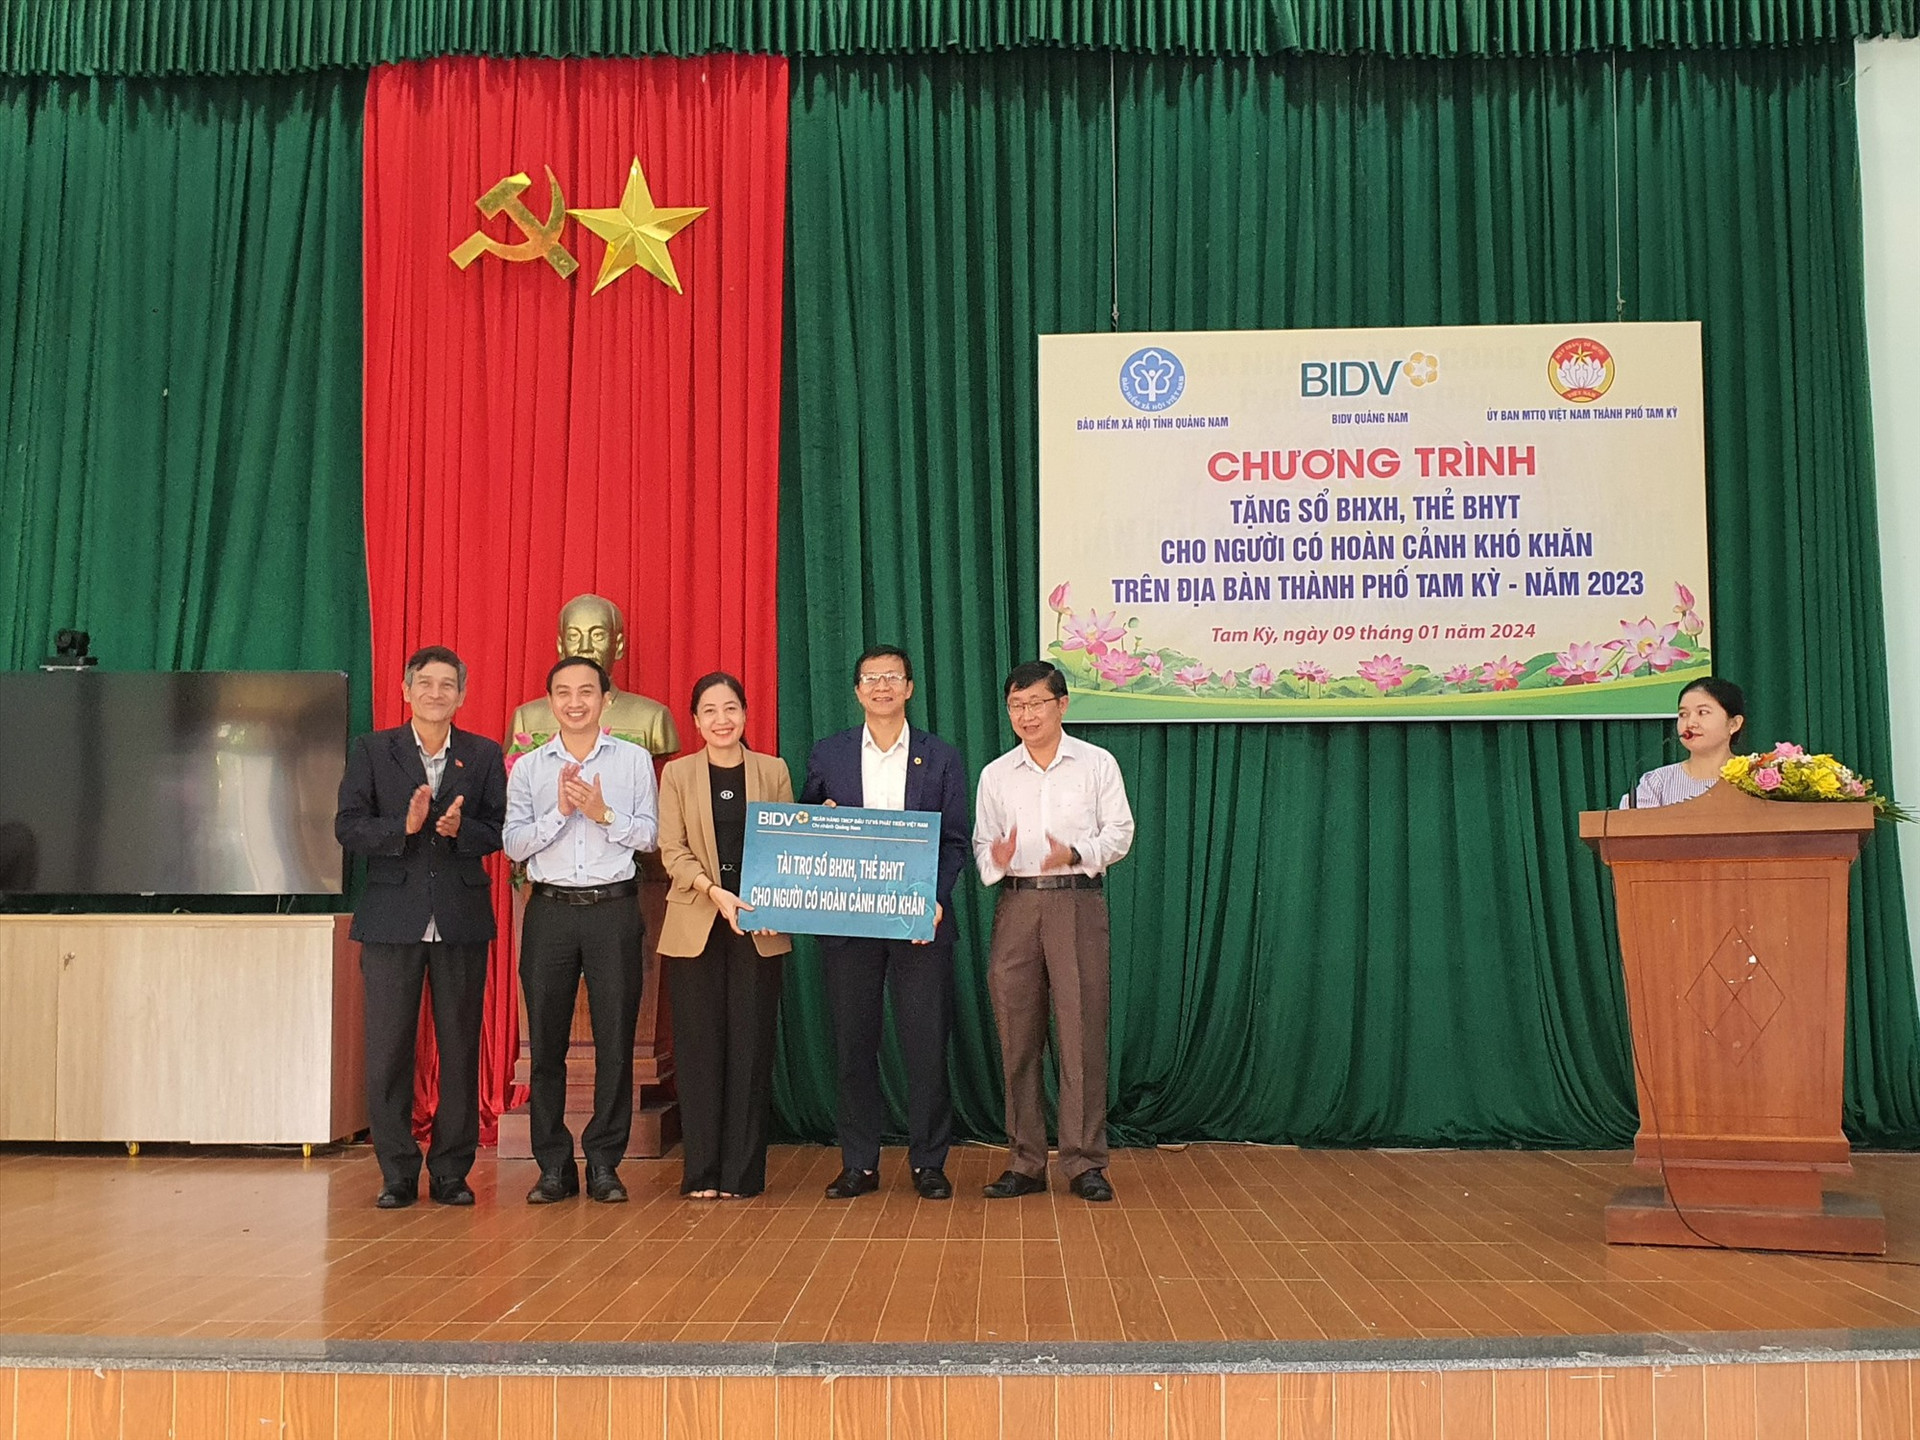 Đơn vị tài trợ trao bảng tượng trưng hỗ trợ sổ BHXH và thẻ BHYT cho người dân Quảng Nam.